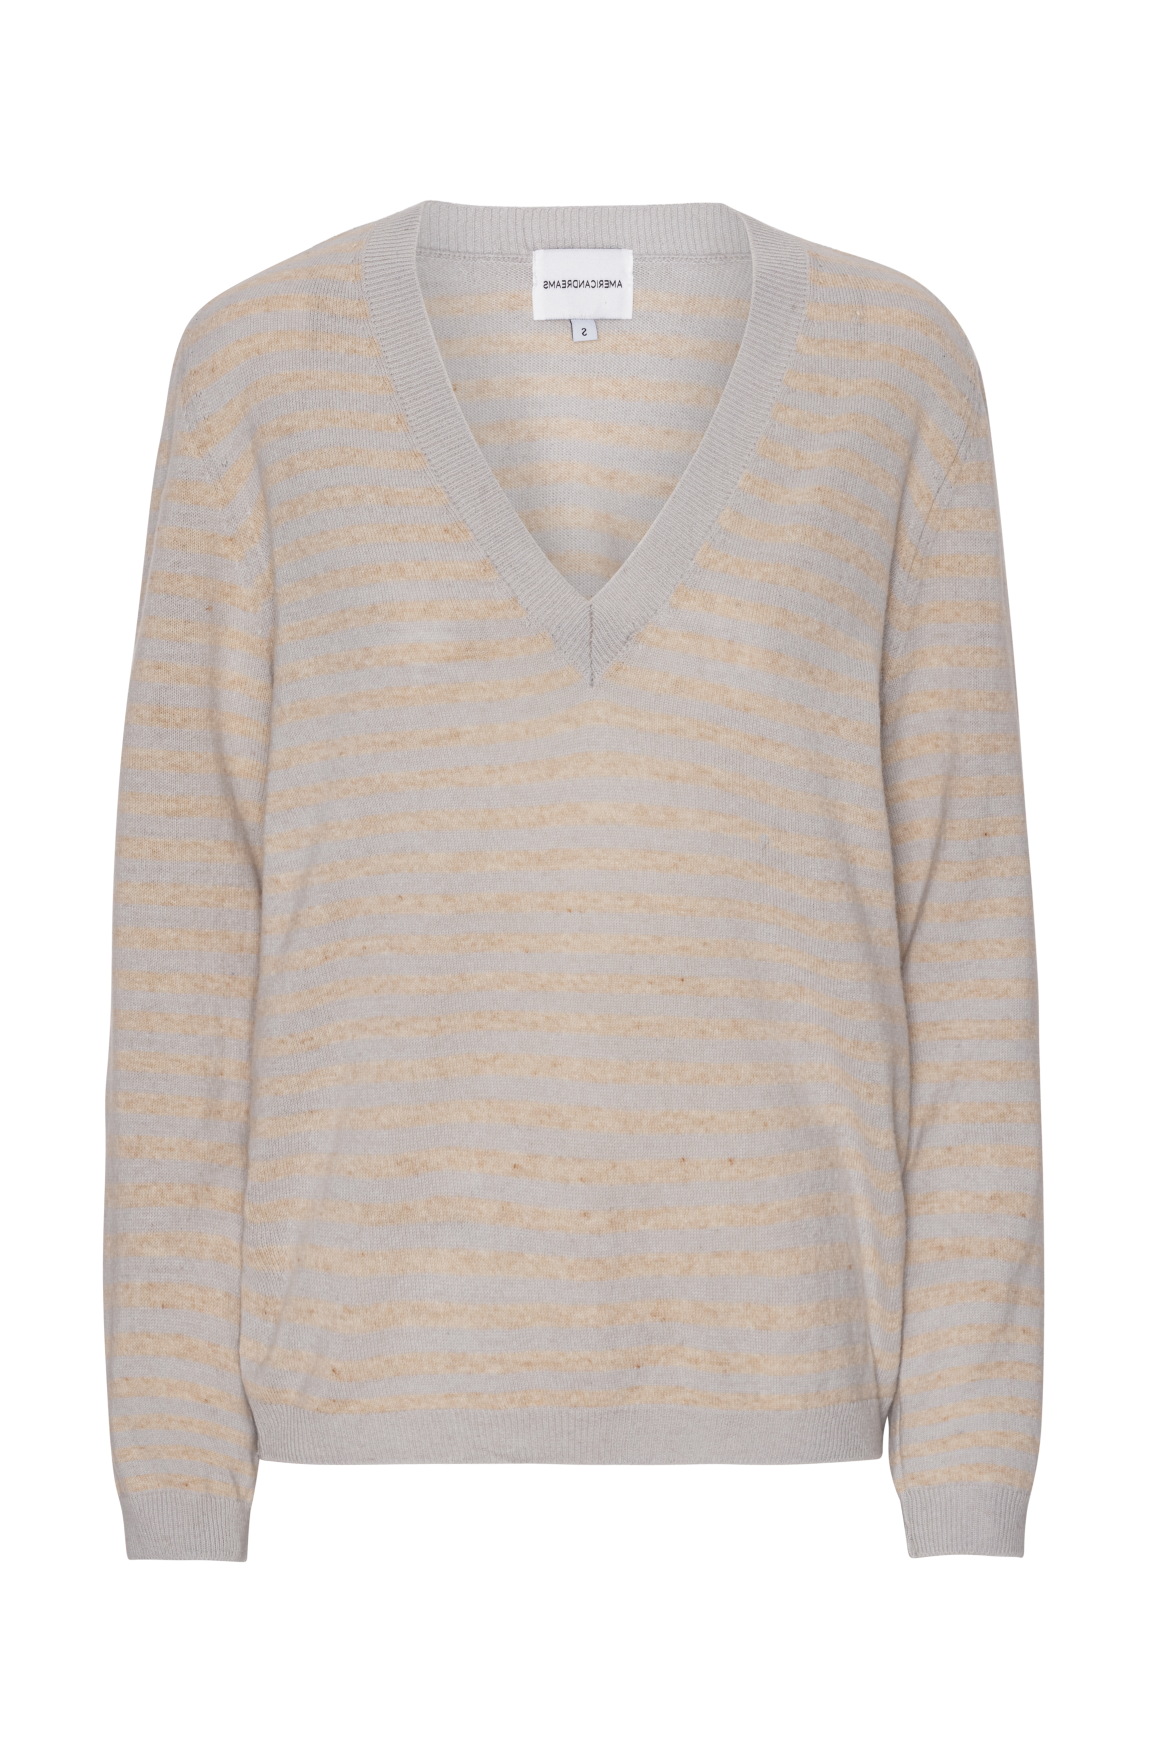 Christy V Neck Cashmere Pullover Grey / Beige